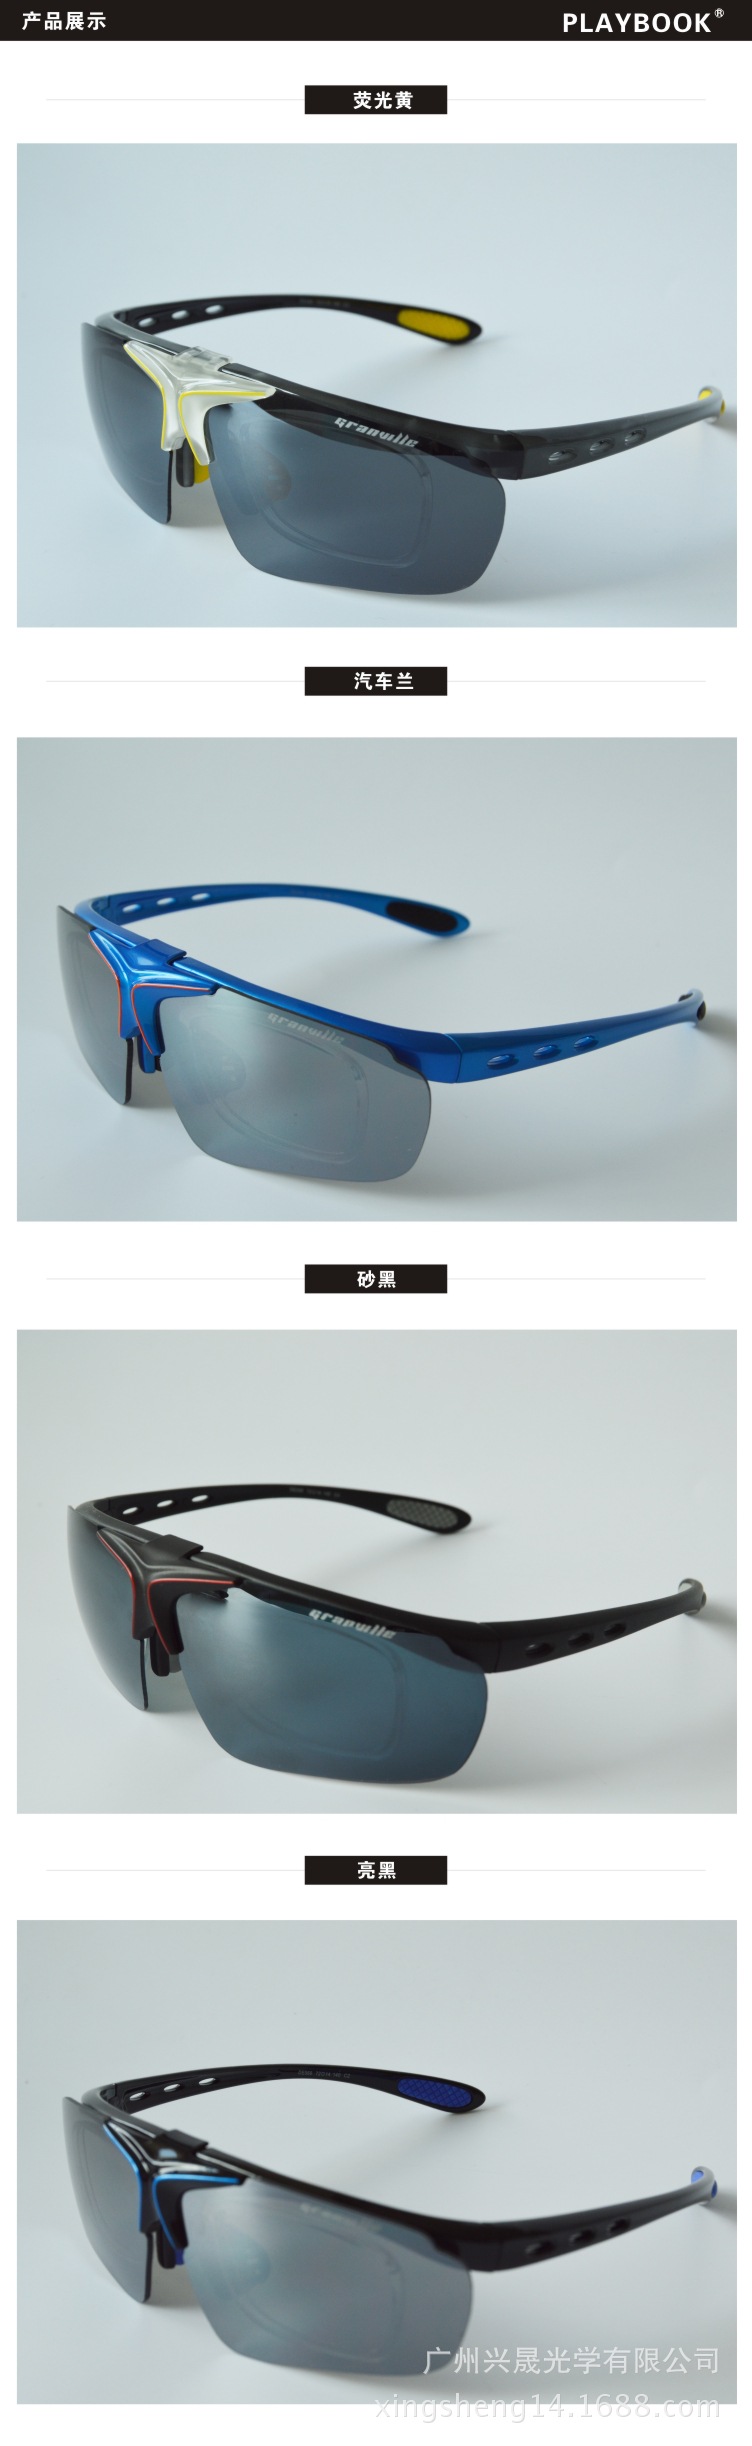 翻盖骑行眼镜 户外偏光运动眼镜 自行车骑行镜 防风防紫外线眼镜示例图7